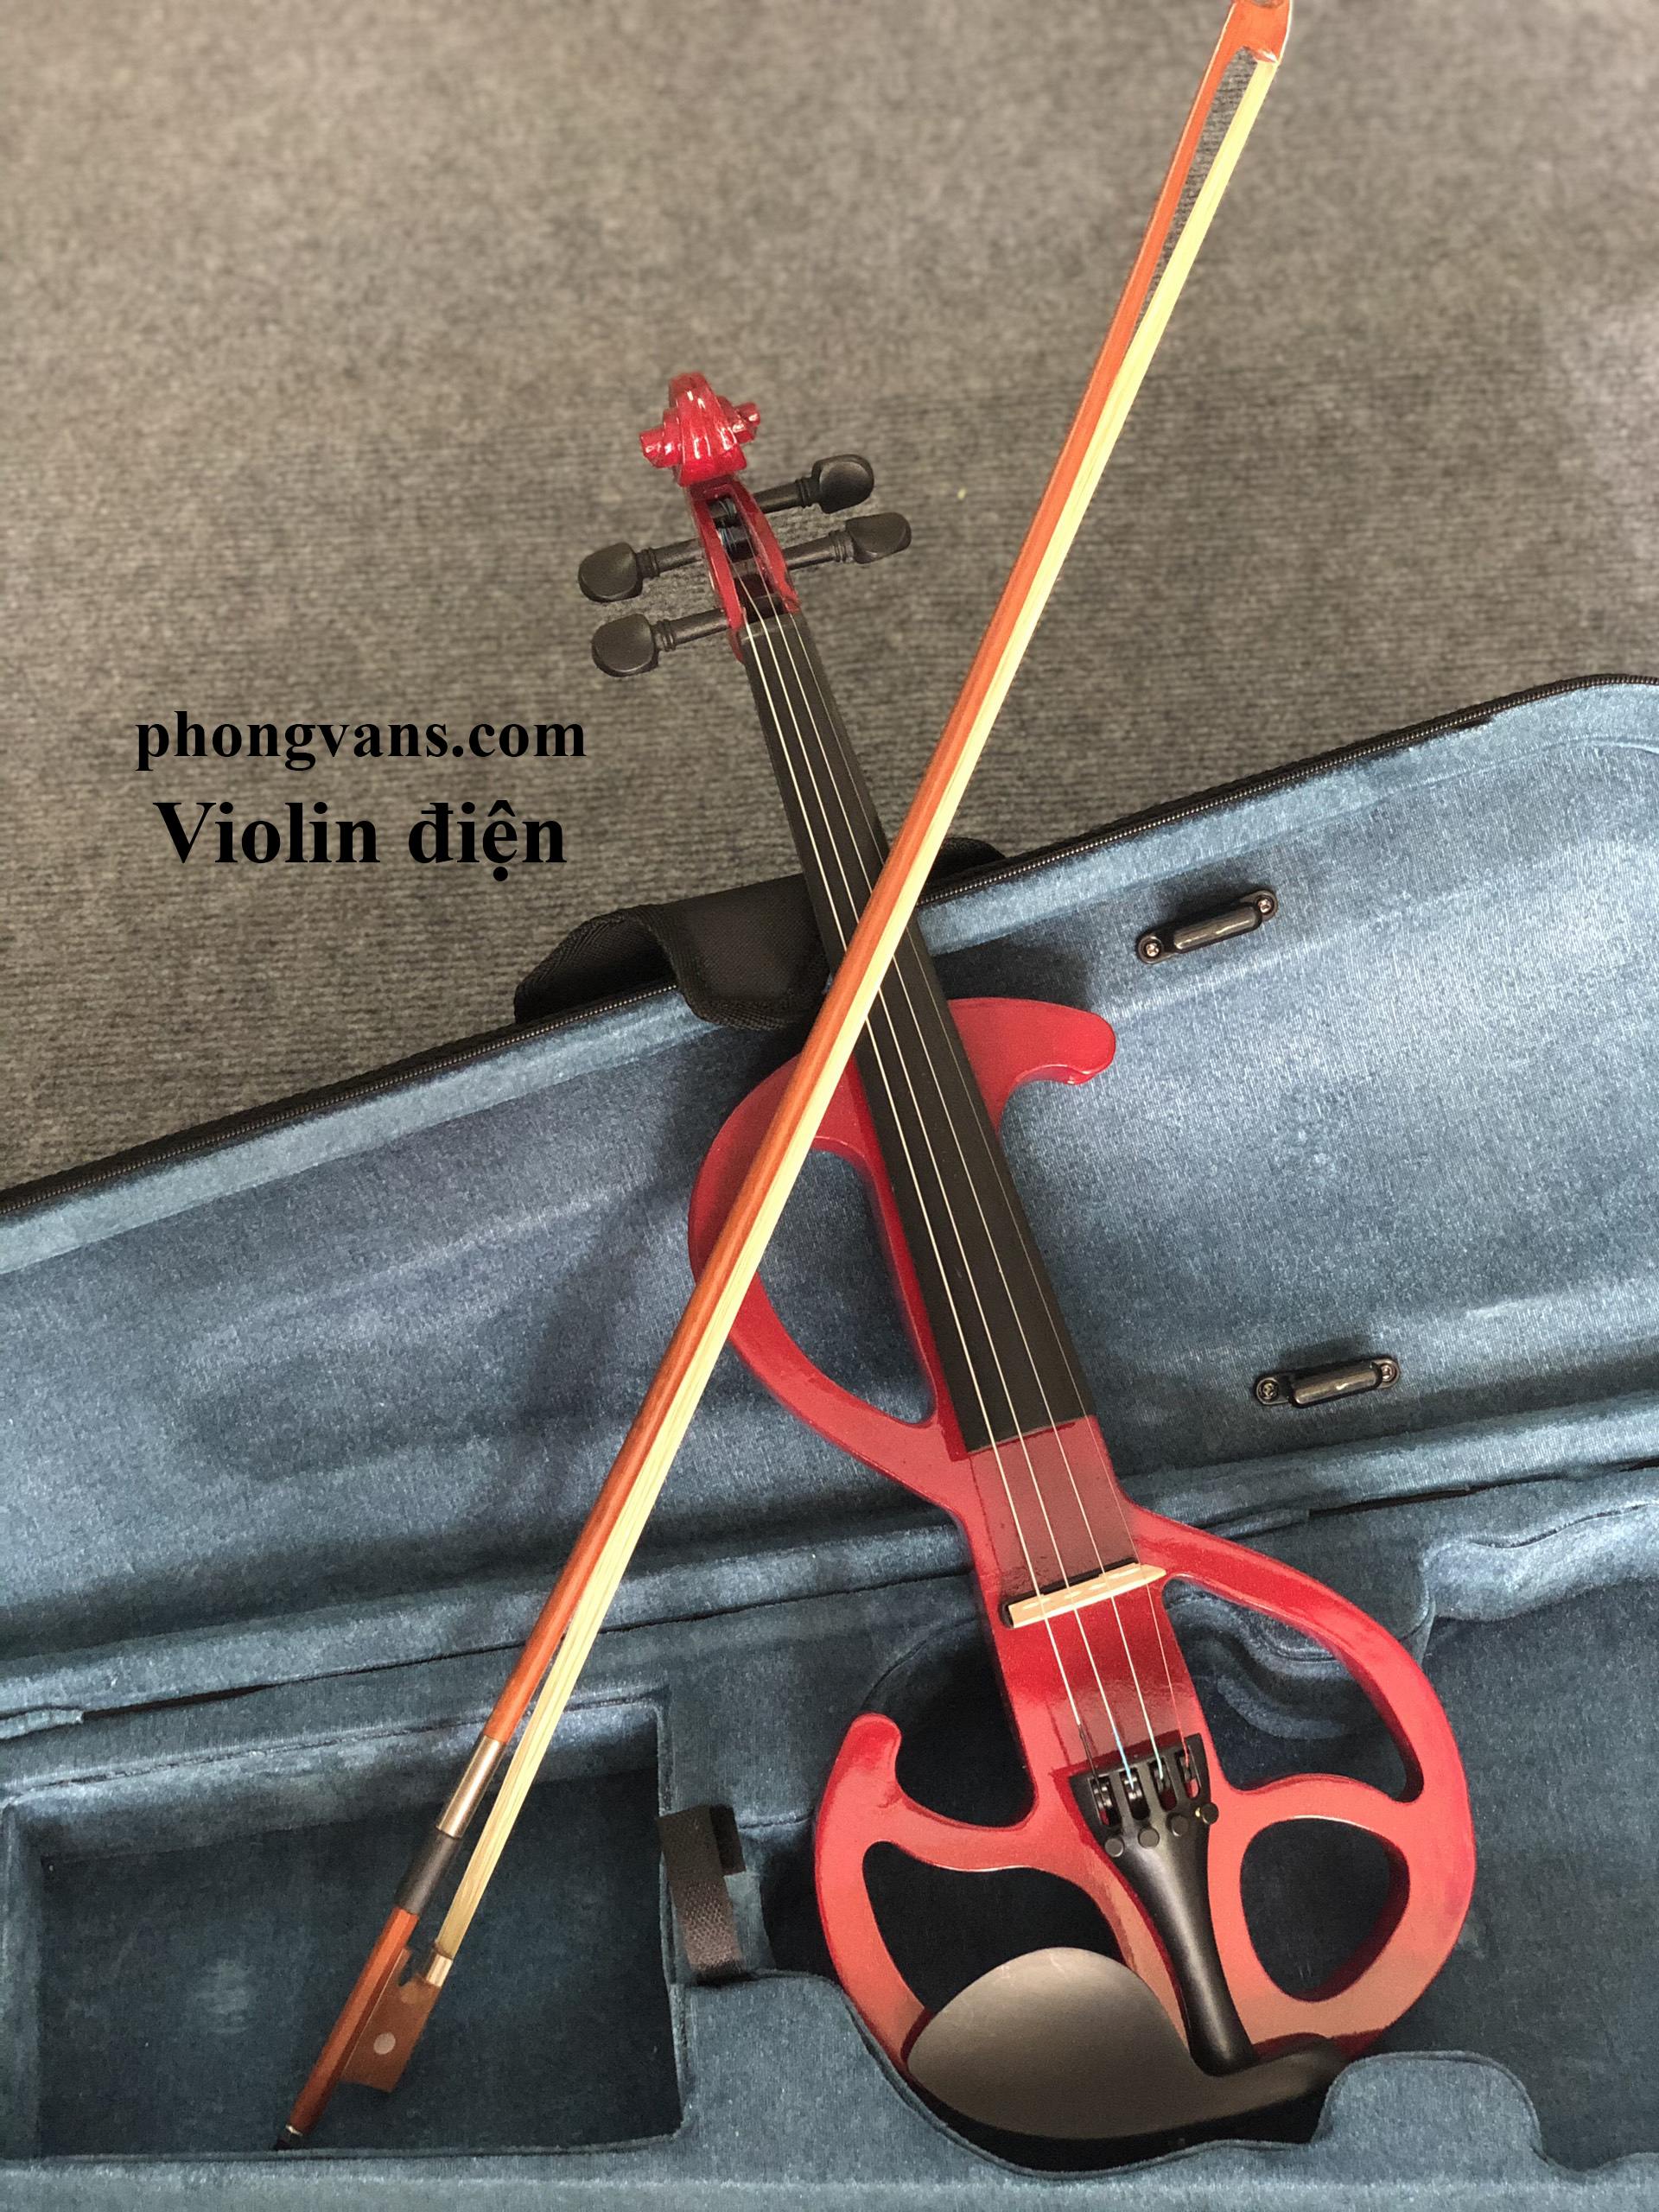 Mua bán đàn (Vĩ cầm) Violin Điện